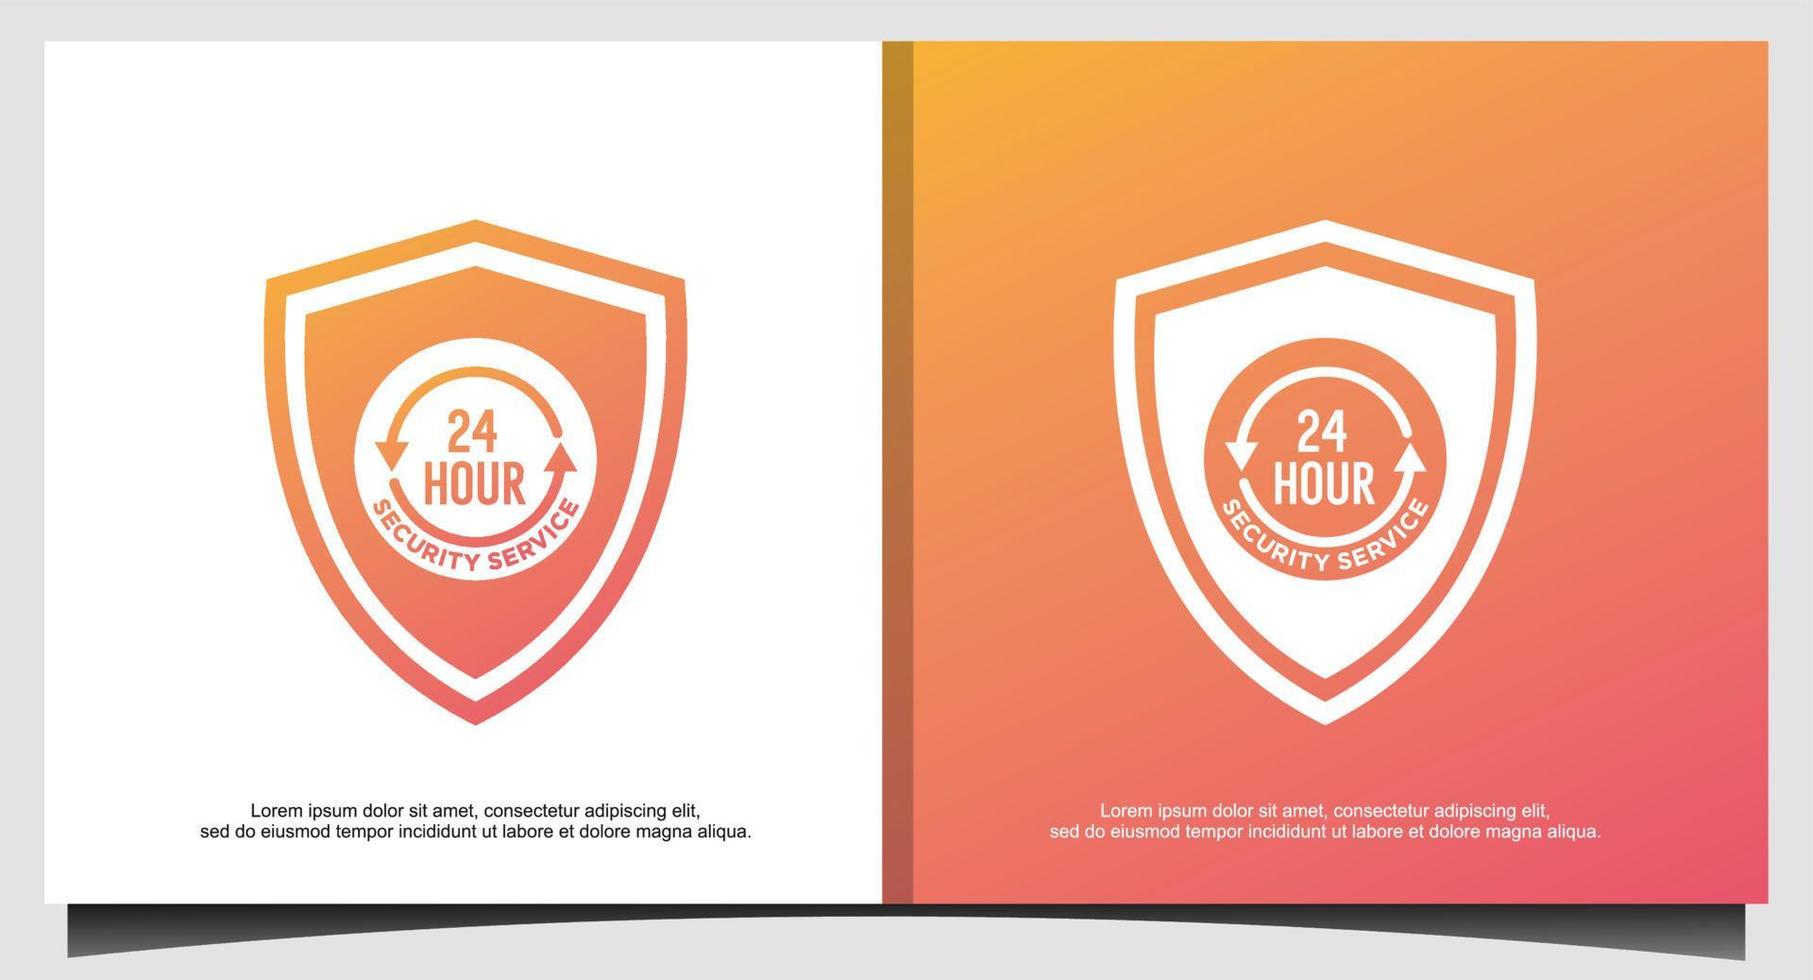 säkerhetstjänst skyddad 24-timmars logotypdesign vektor